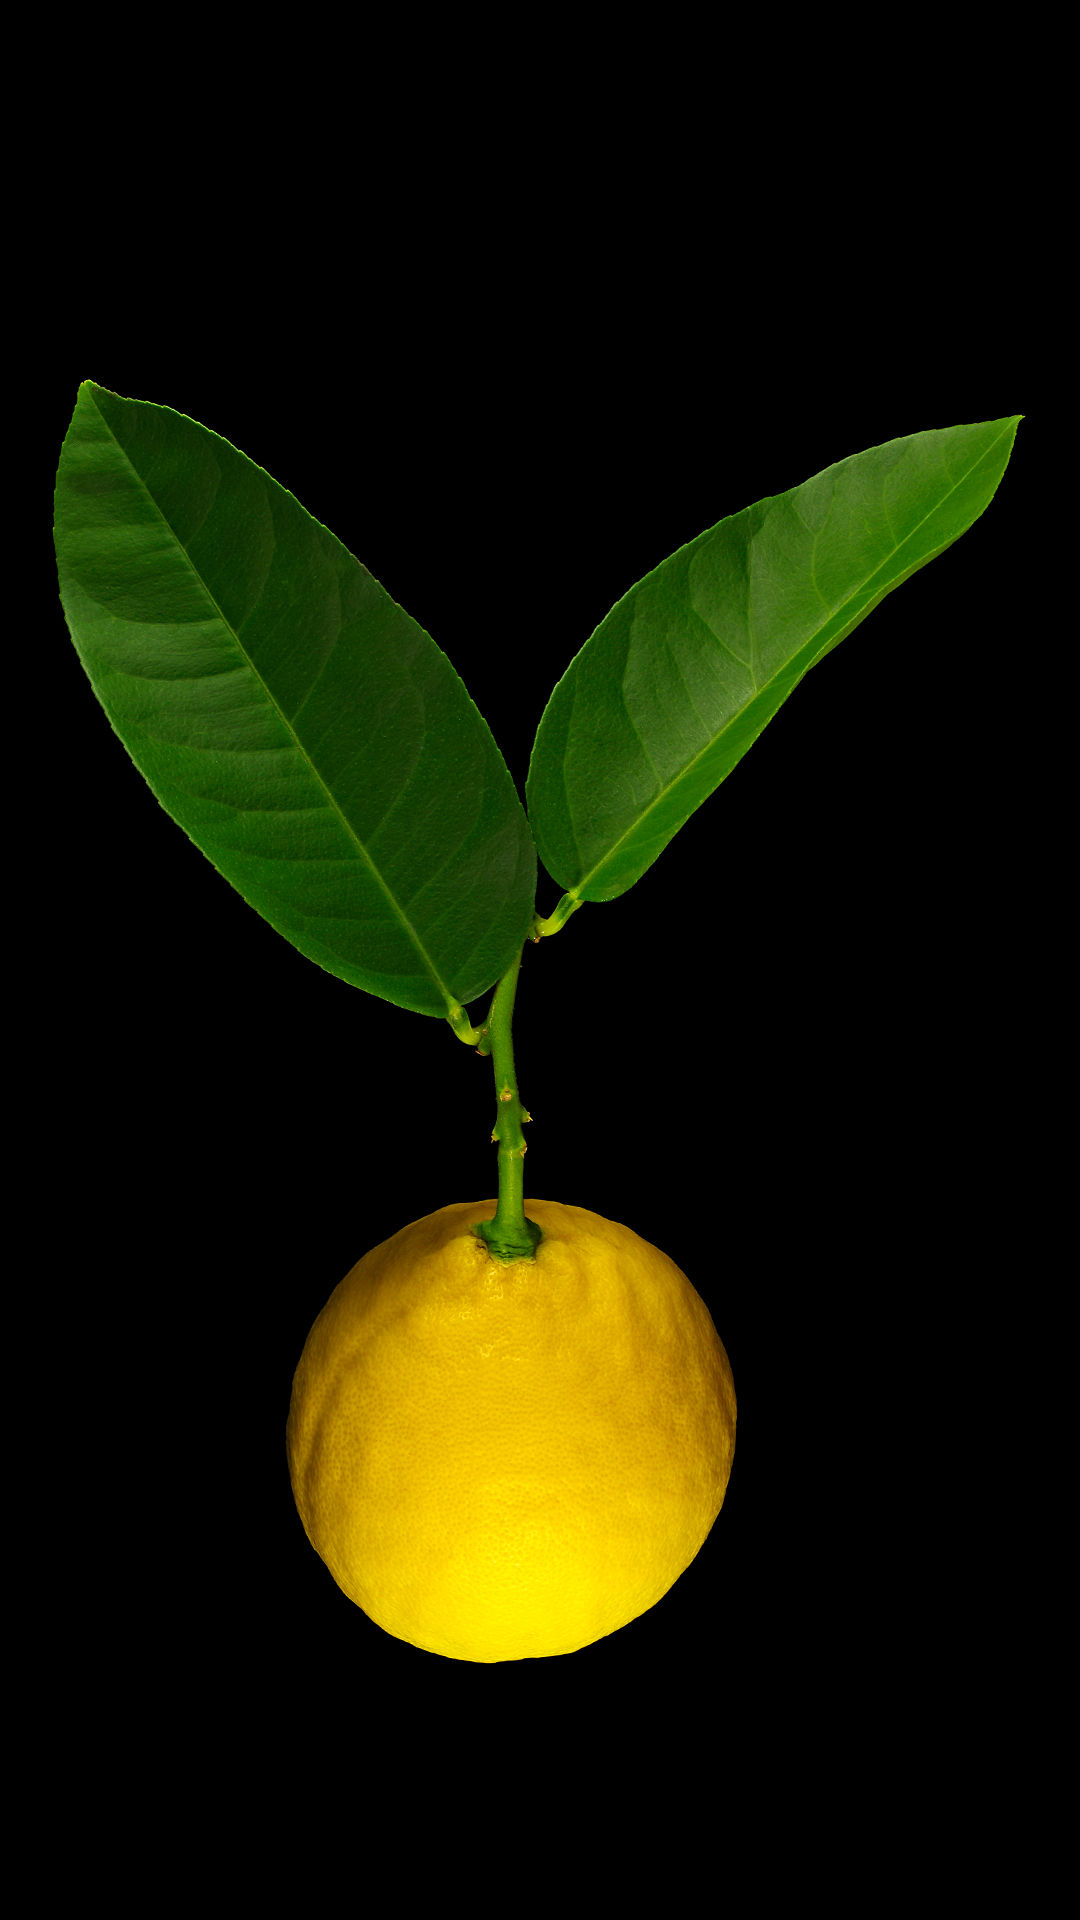 Die Lipo-Kaiserzitrone: Citrus limon x Citrus paradisi ‚Lipo‘